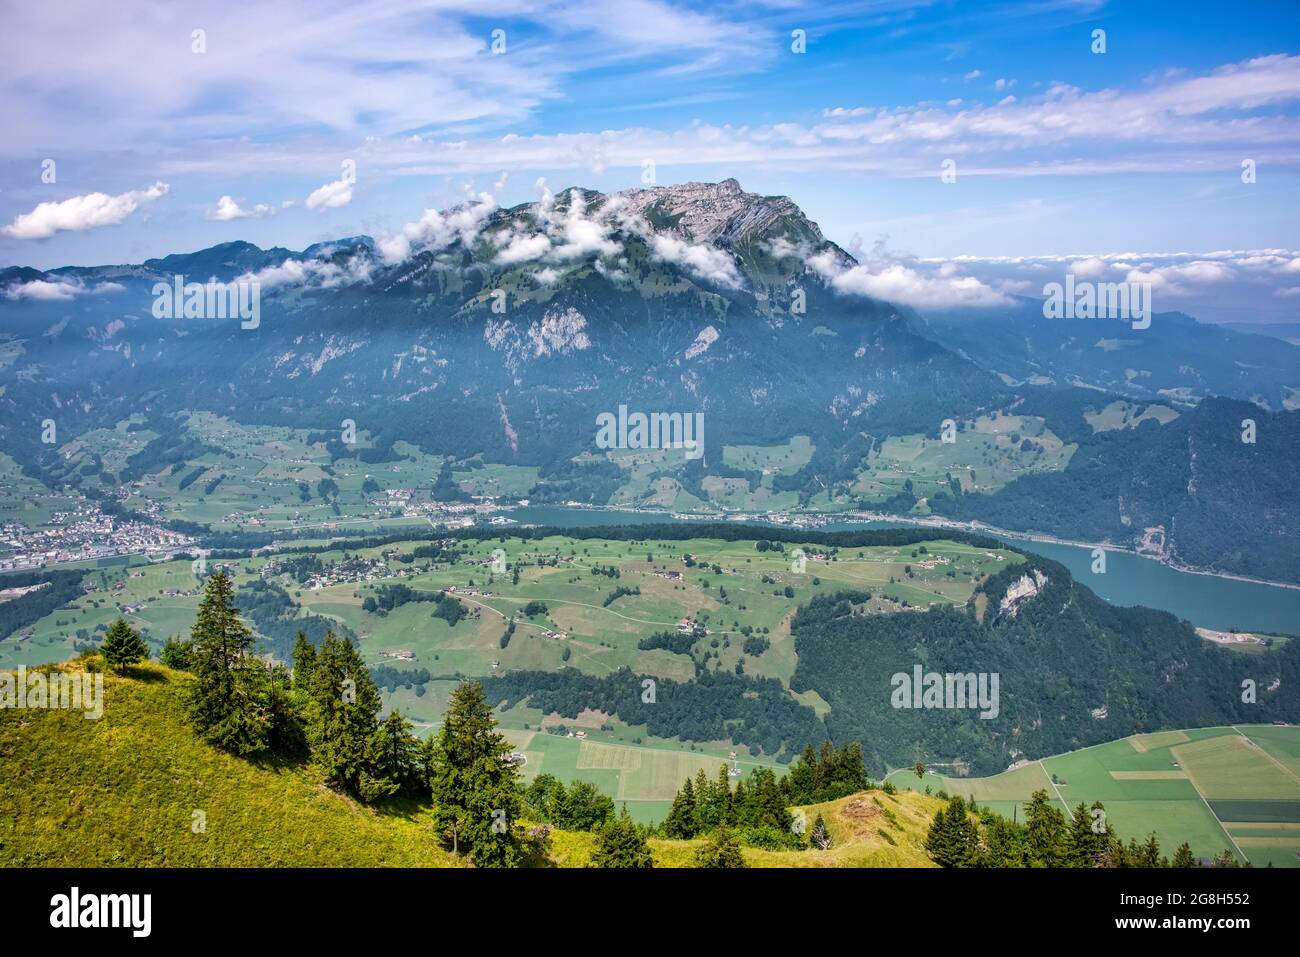 Der Pilatus, auch oft als Pilatus bezeichnet, ist ein majestätischer Berg mit Blick auf Luzern in der Zentralschweiz. Stockfoto